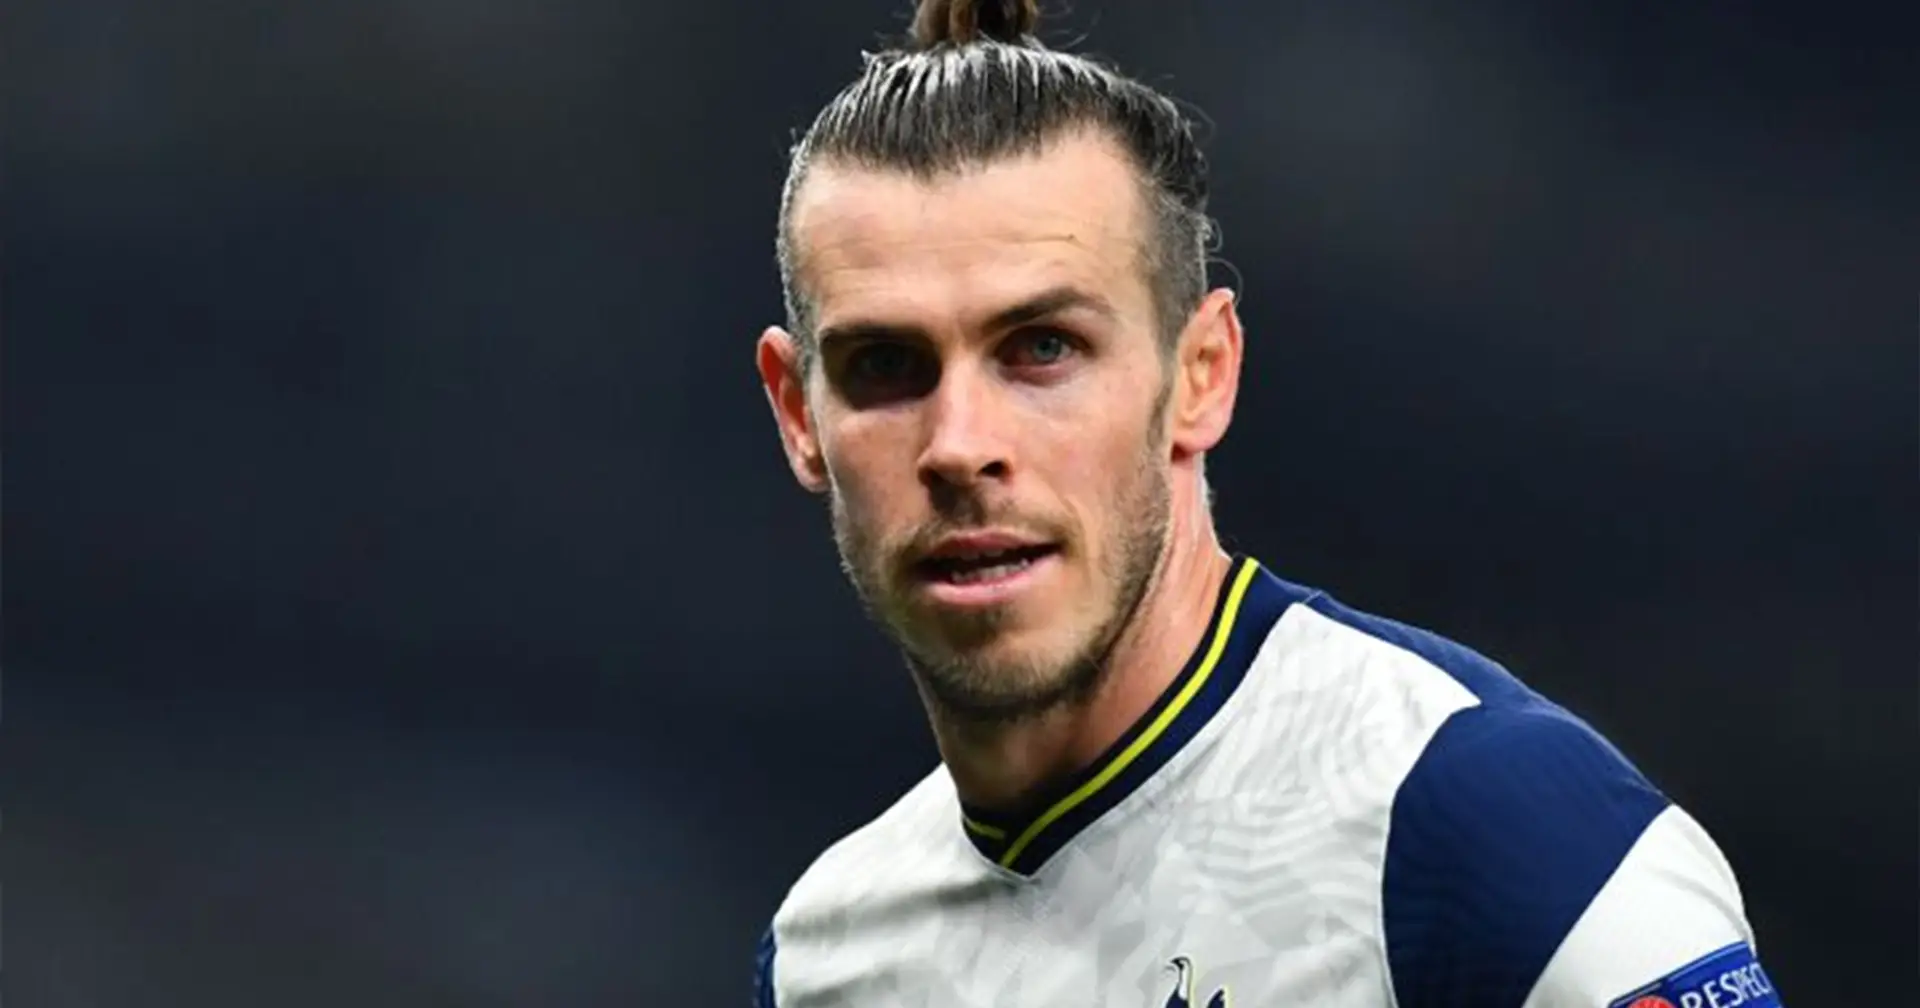 El mal paso de Bale por el Tottenham le costará al Madrid 40M de euros